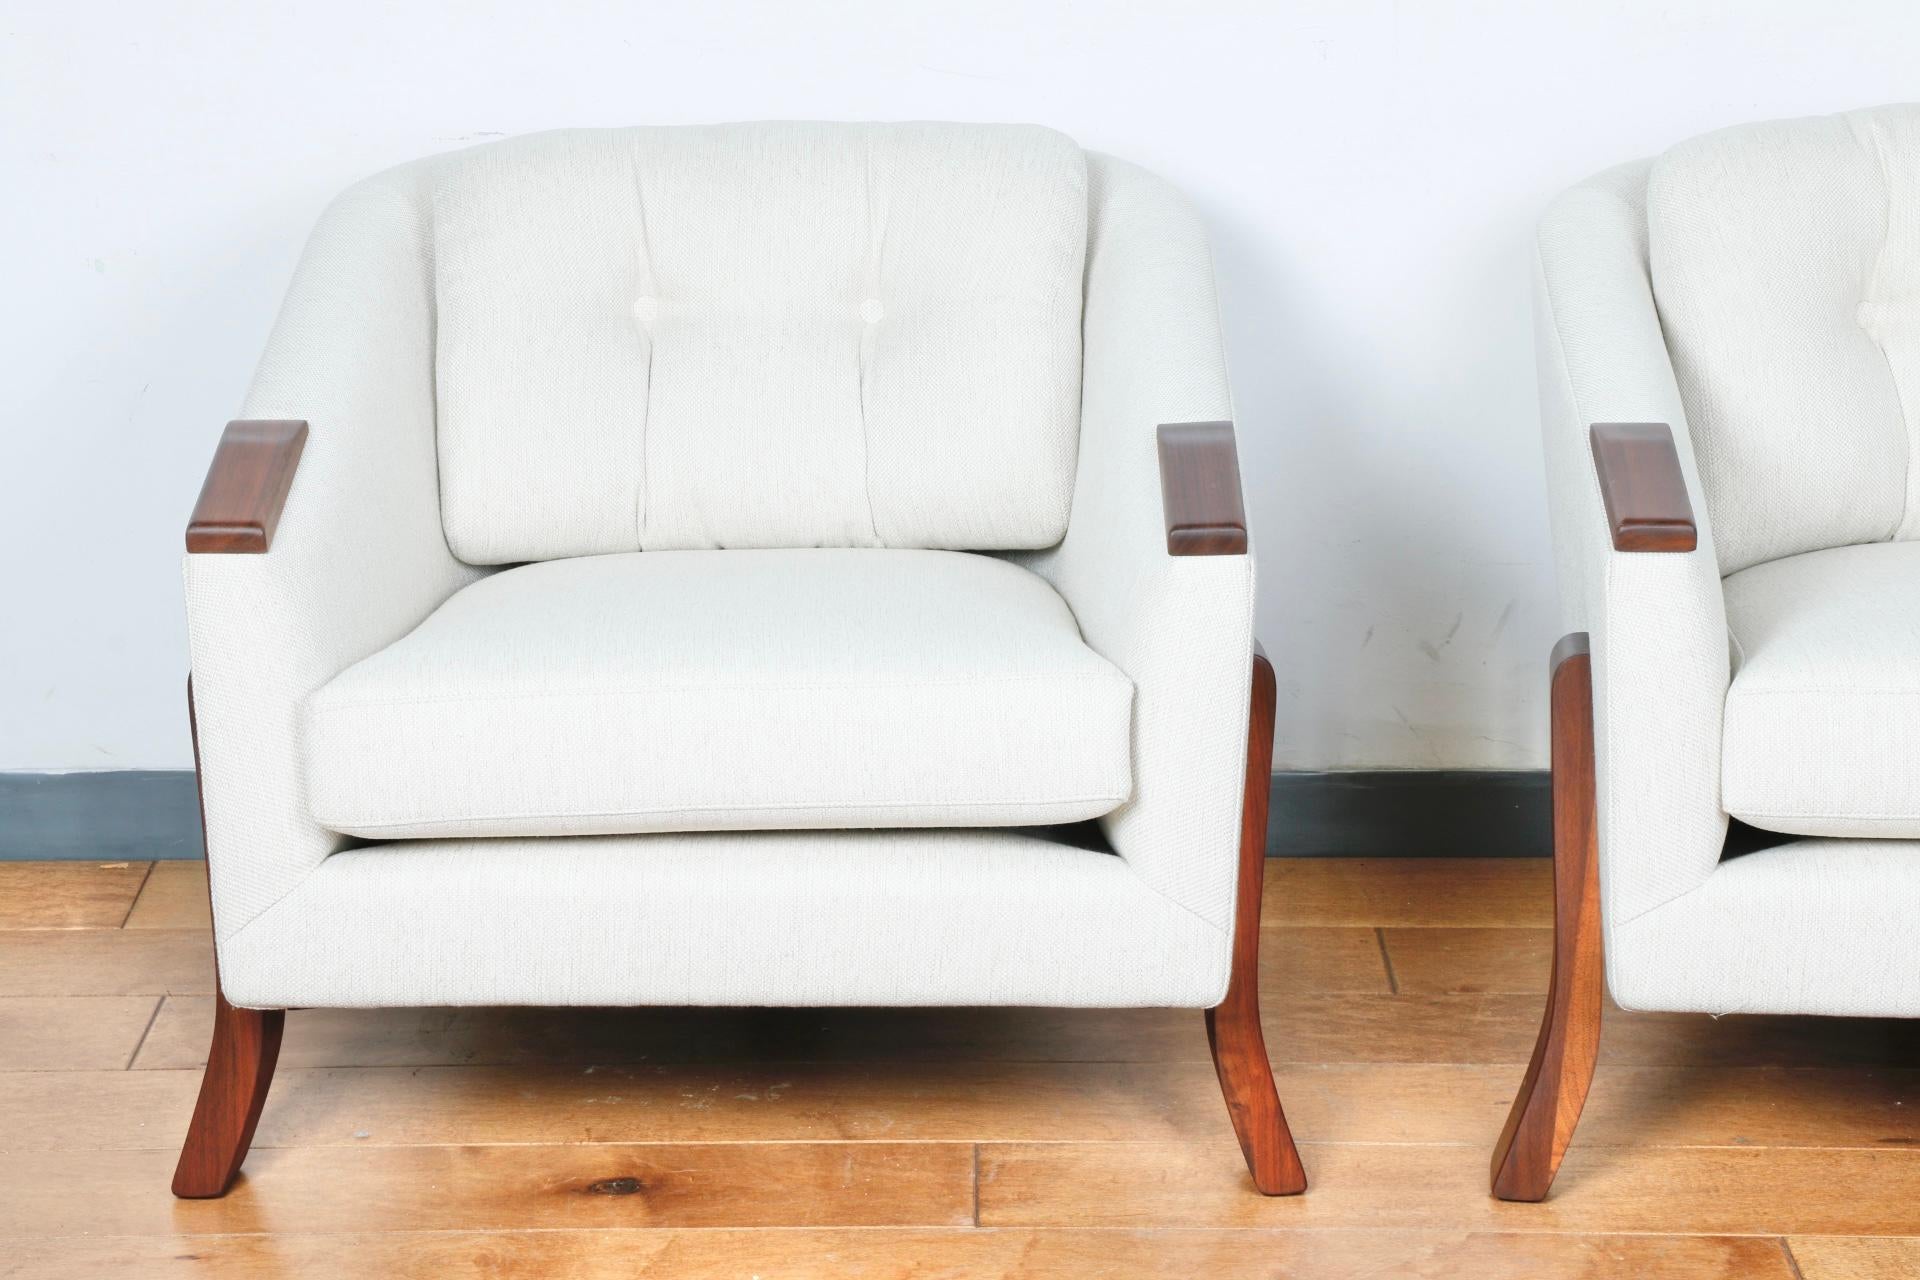 Magnifique paire de chaises longues retapissées et refinies. Superbe tissu de style vintage en excellent état. Ils ont de belles bases qui les mettent en valeur. 
Super confortable et décontracté. 

